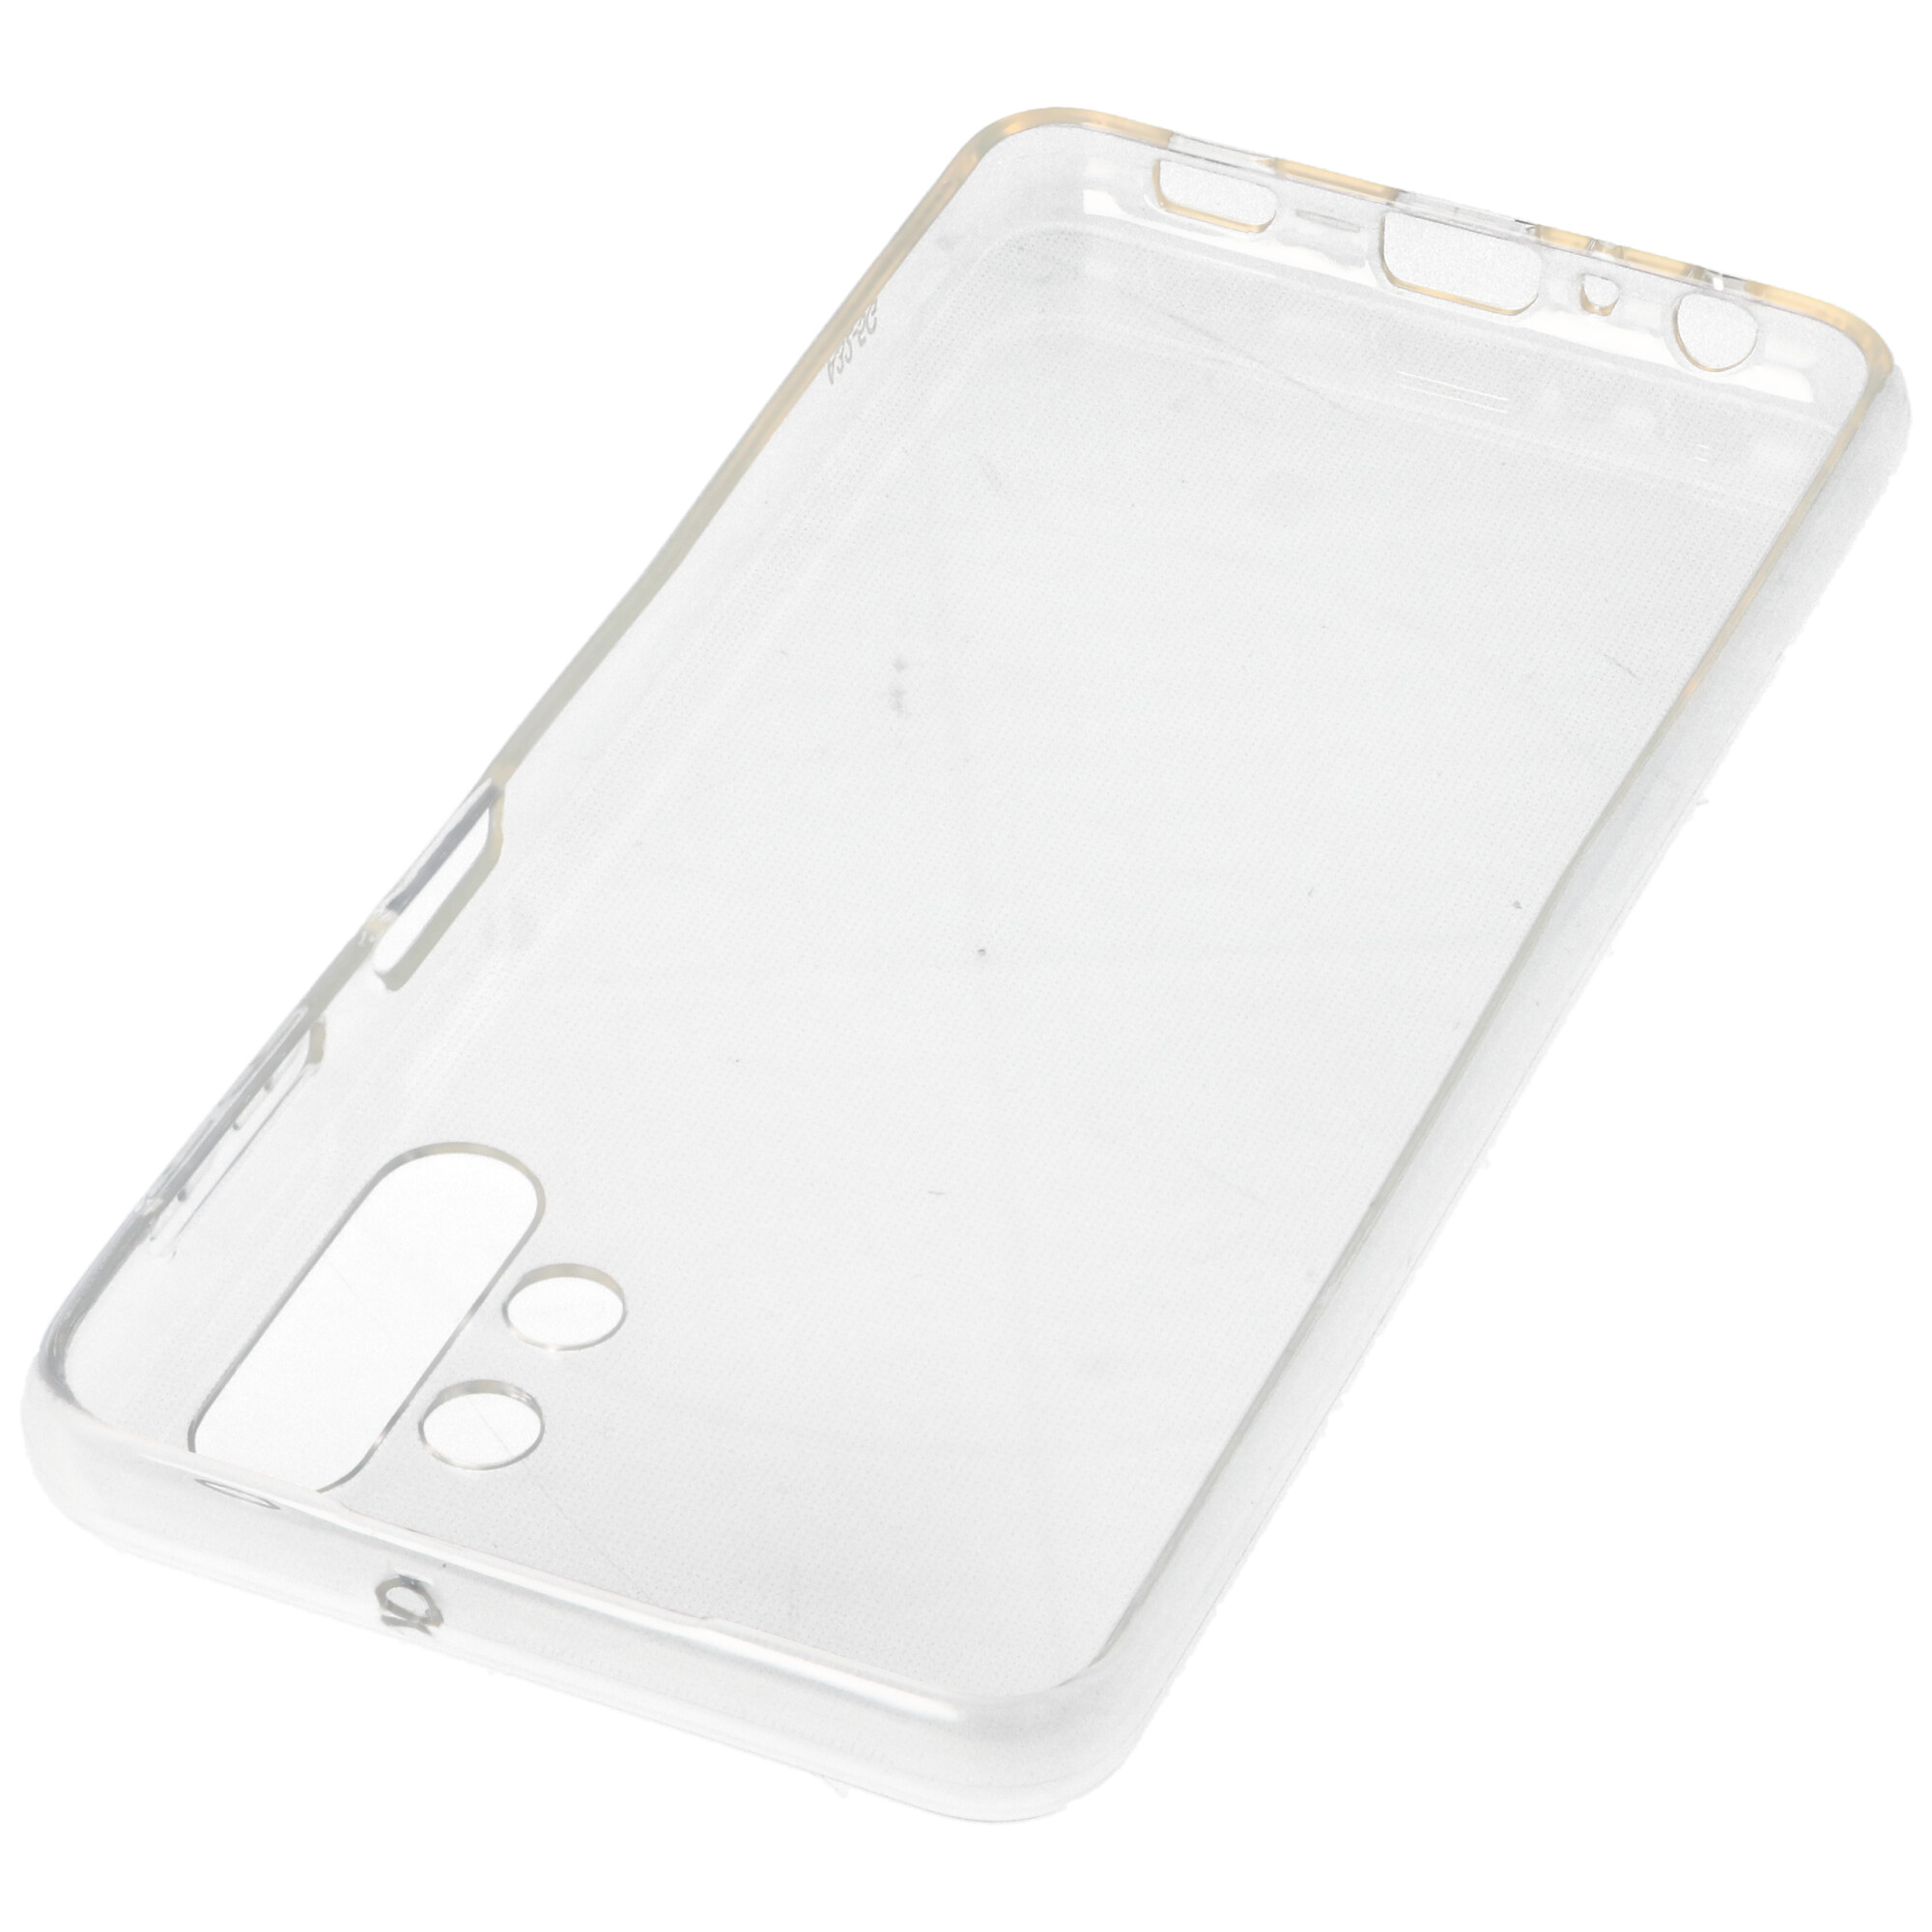 Hülle passend für Samsung Galaxy A32 - transparente Schutzhülle, Anti-Gelb Luftkissen Fallschutz Silikon Handyhülle robustes TPU Case